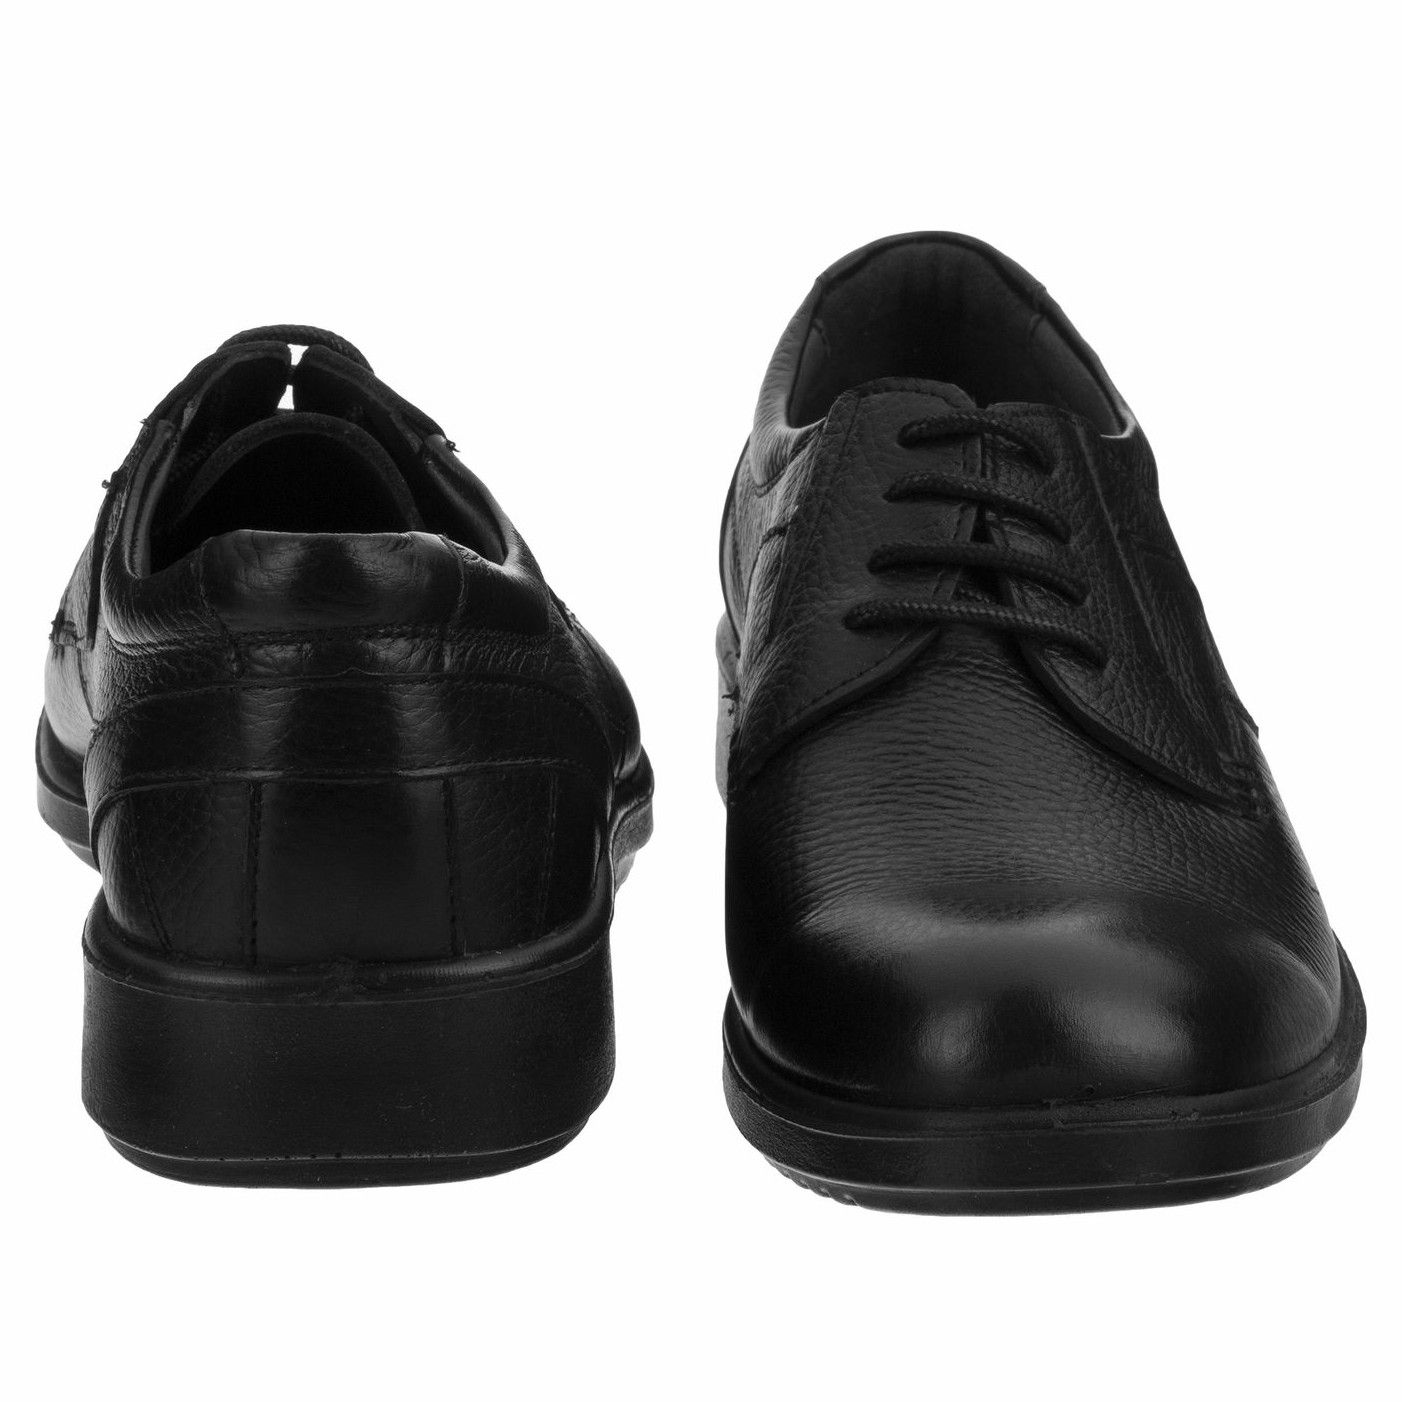 کفش روزمره مردانه بلوط مدل چرم طبیعی مدل B503101 -  - 3